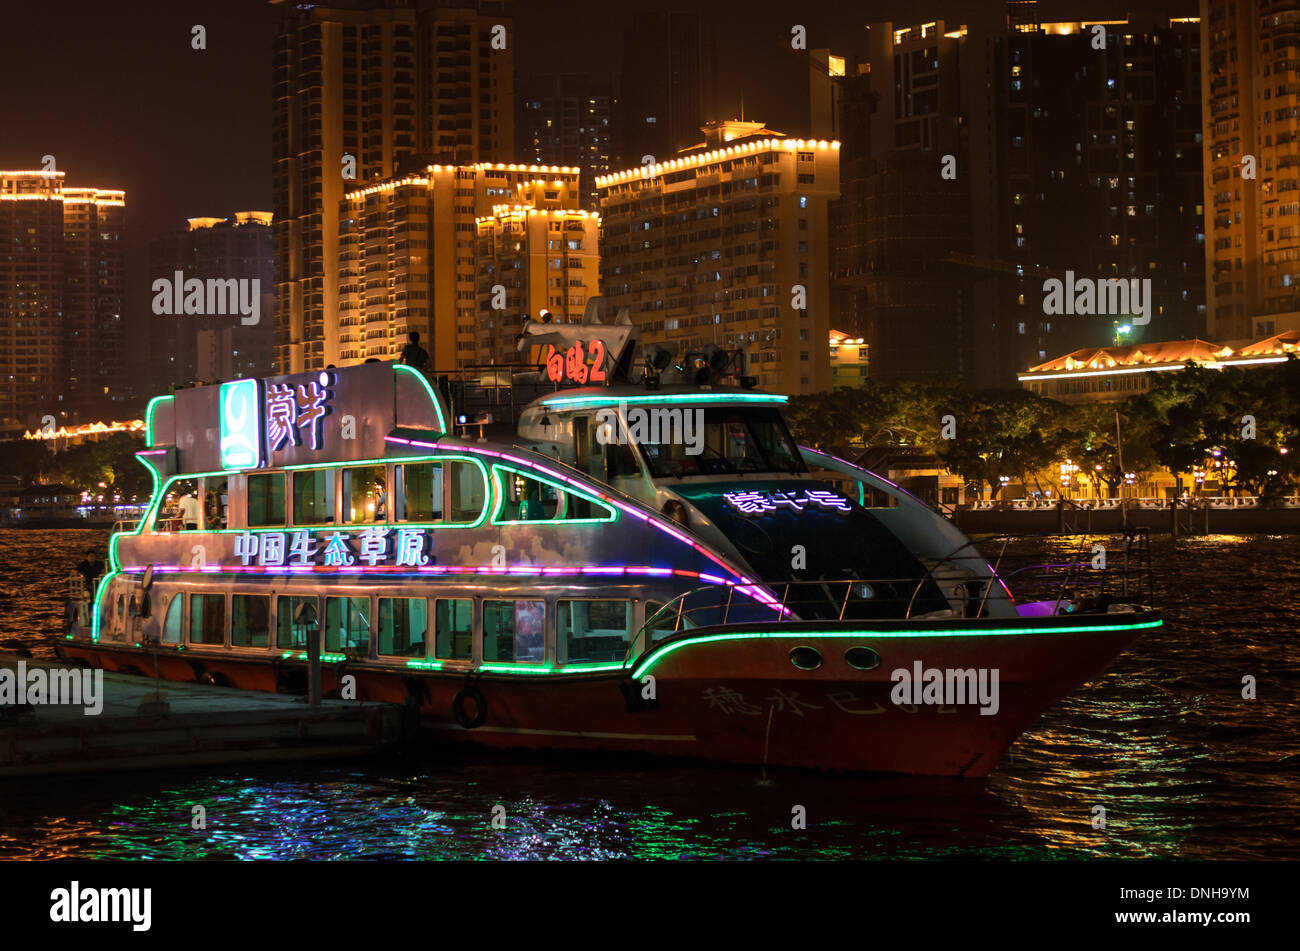 Chinesische Touristenboot für die Nacht Zeit Sightseeing entlang eines großen Flusses verwendet. Stockfoto